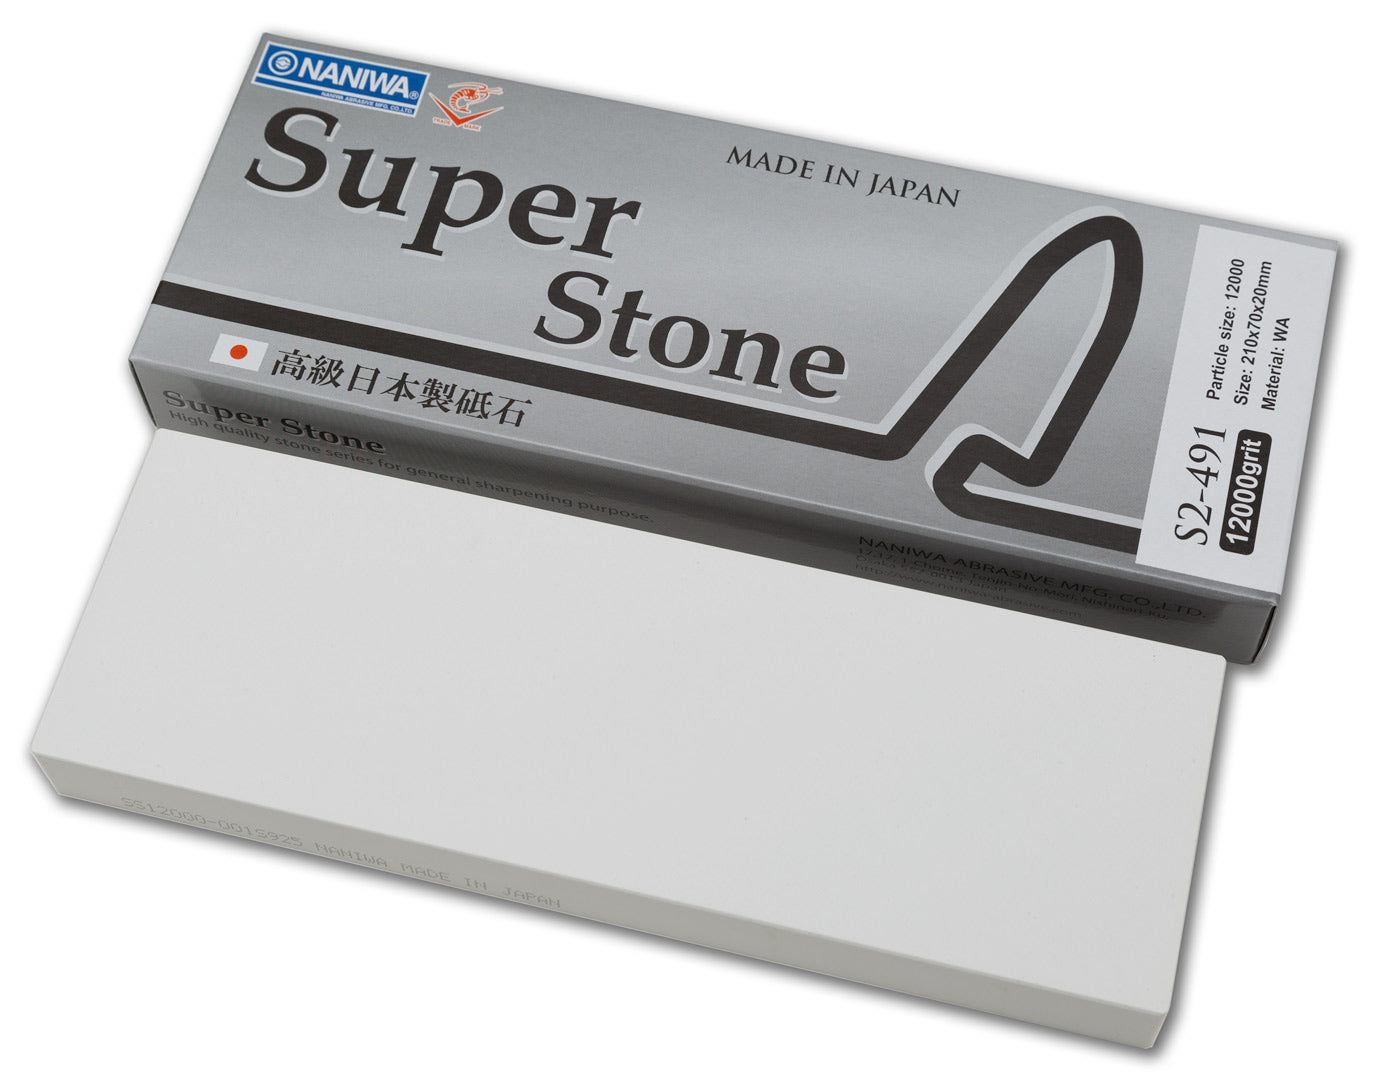 Naniwa Super-Stone Japanese Whetstone Sharpening Stone, 12,000 grit